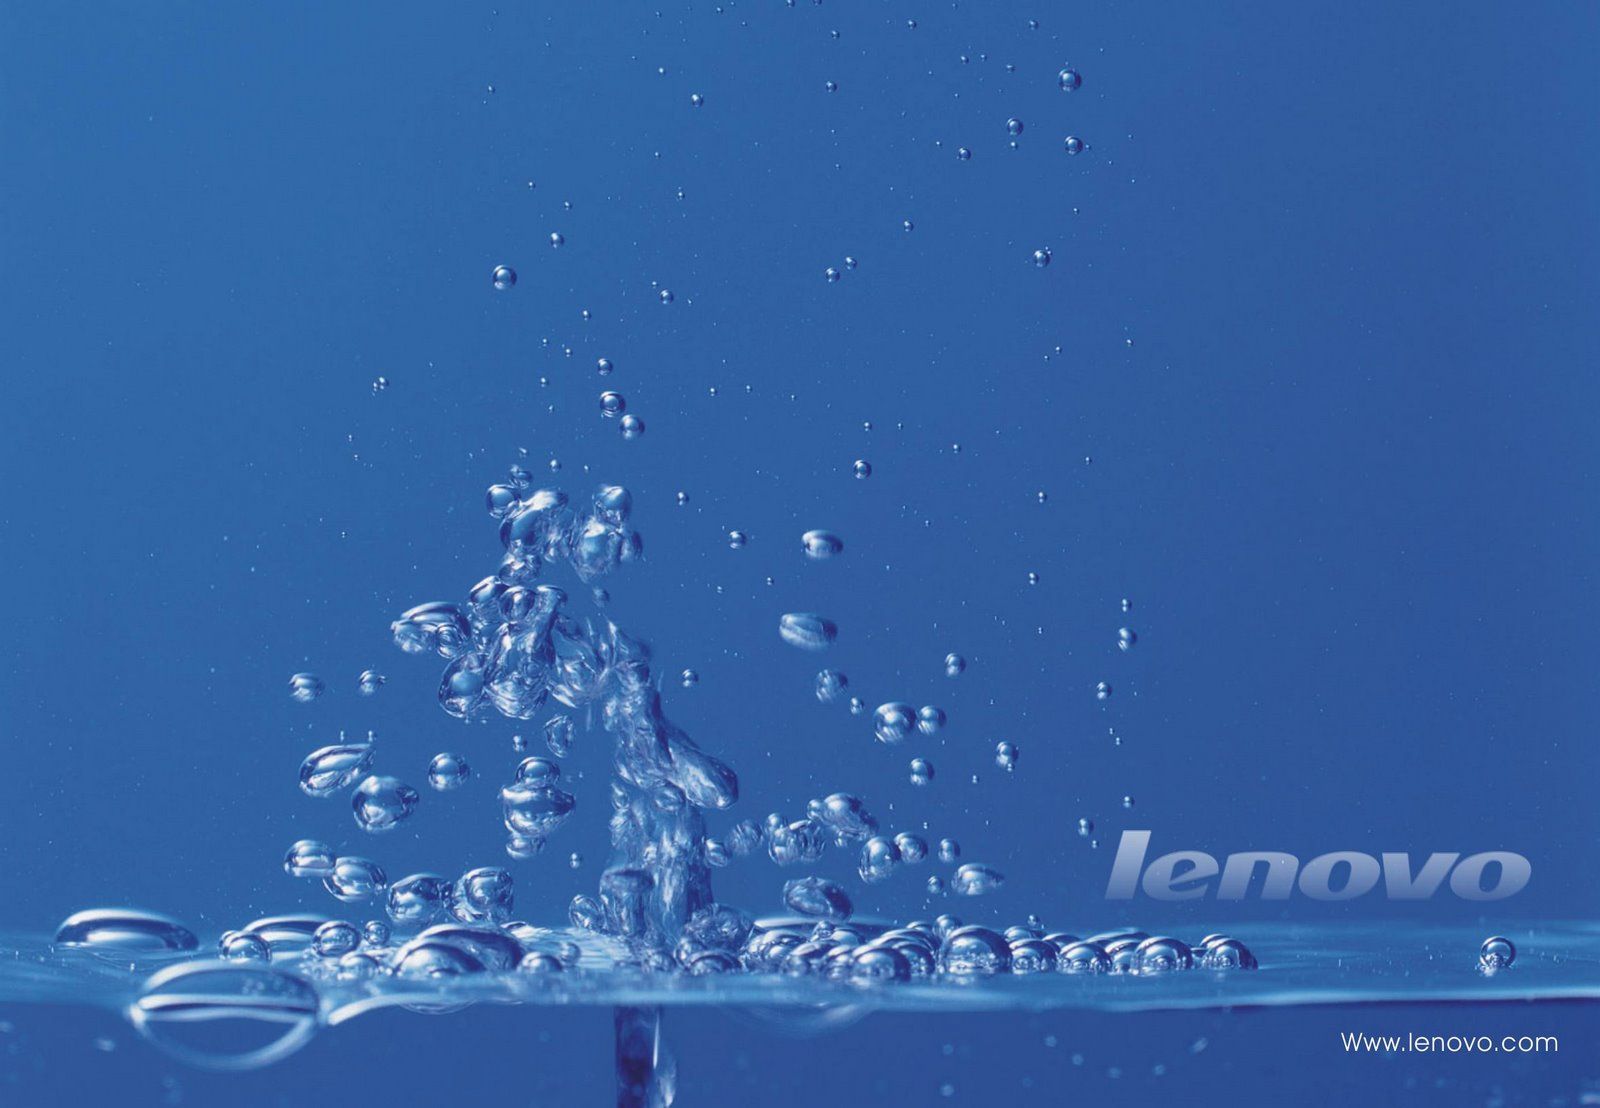 lenovo k6 power wallpaper,water,blue,sky,atmosphere,liquid